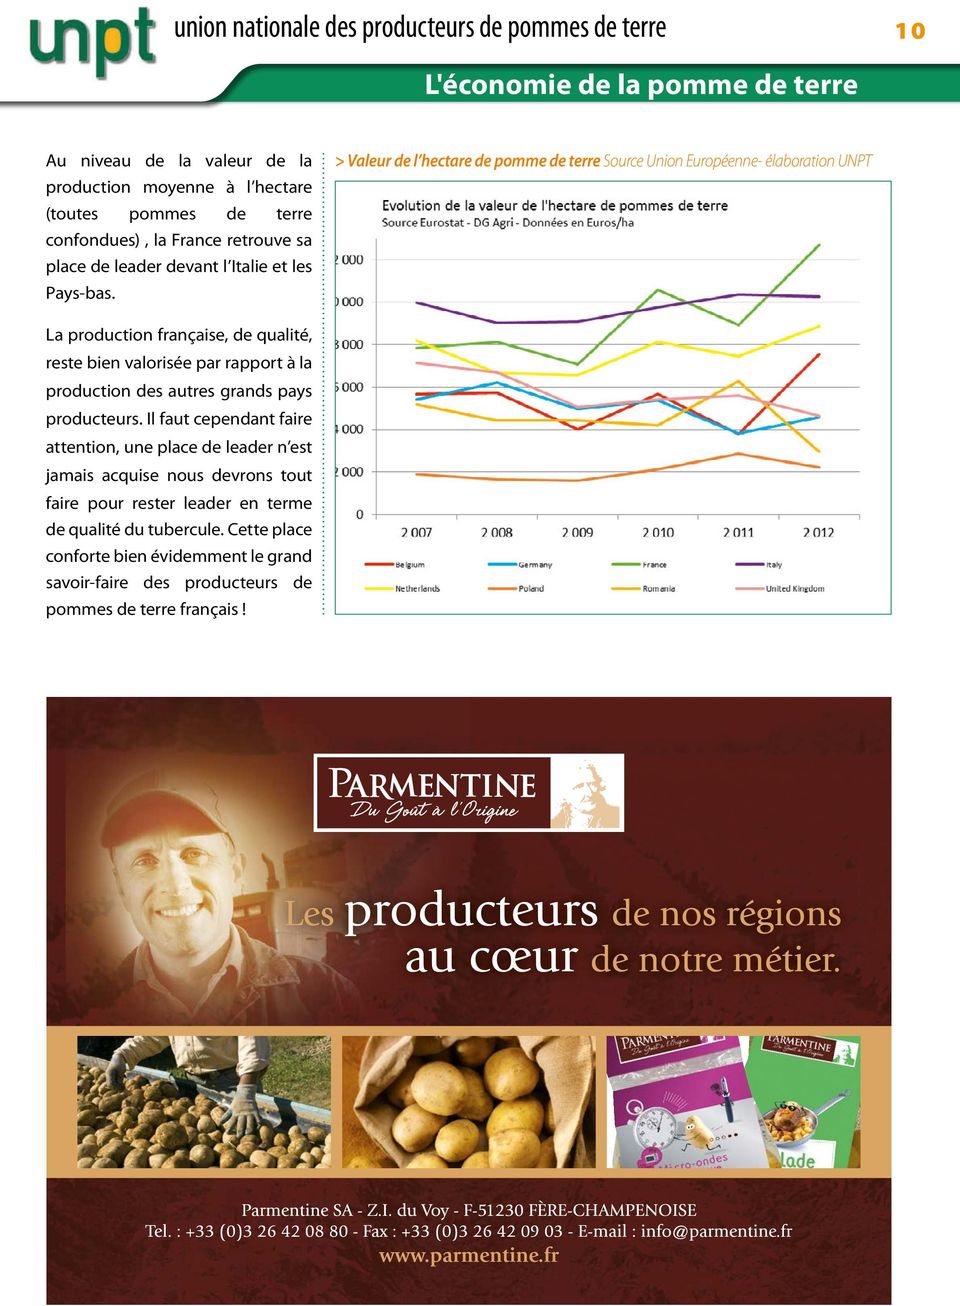 La production française, de qualité, reste bien valorisée par rapport à la production des autres grands pays producteurs.